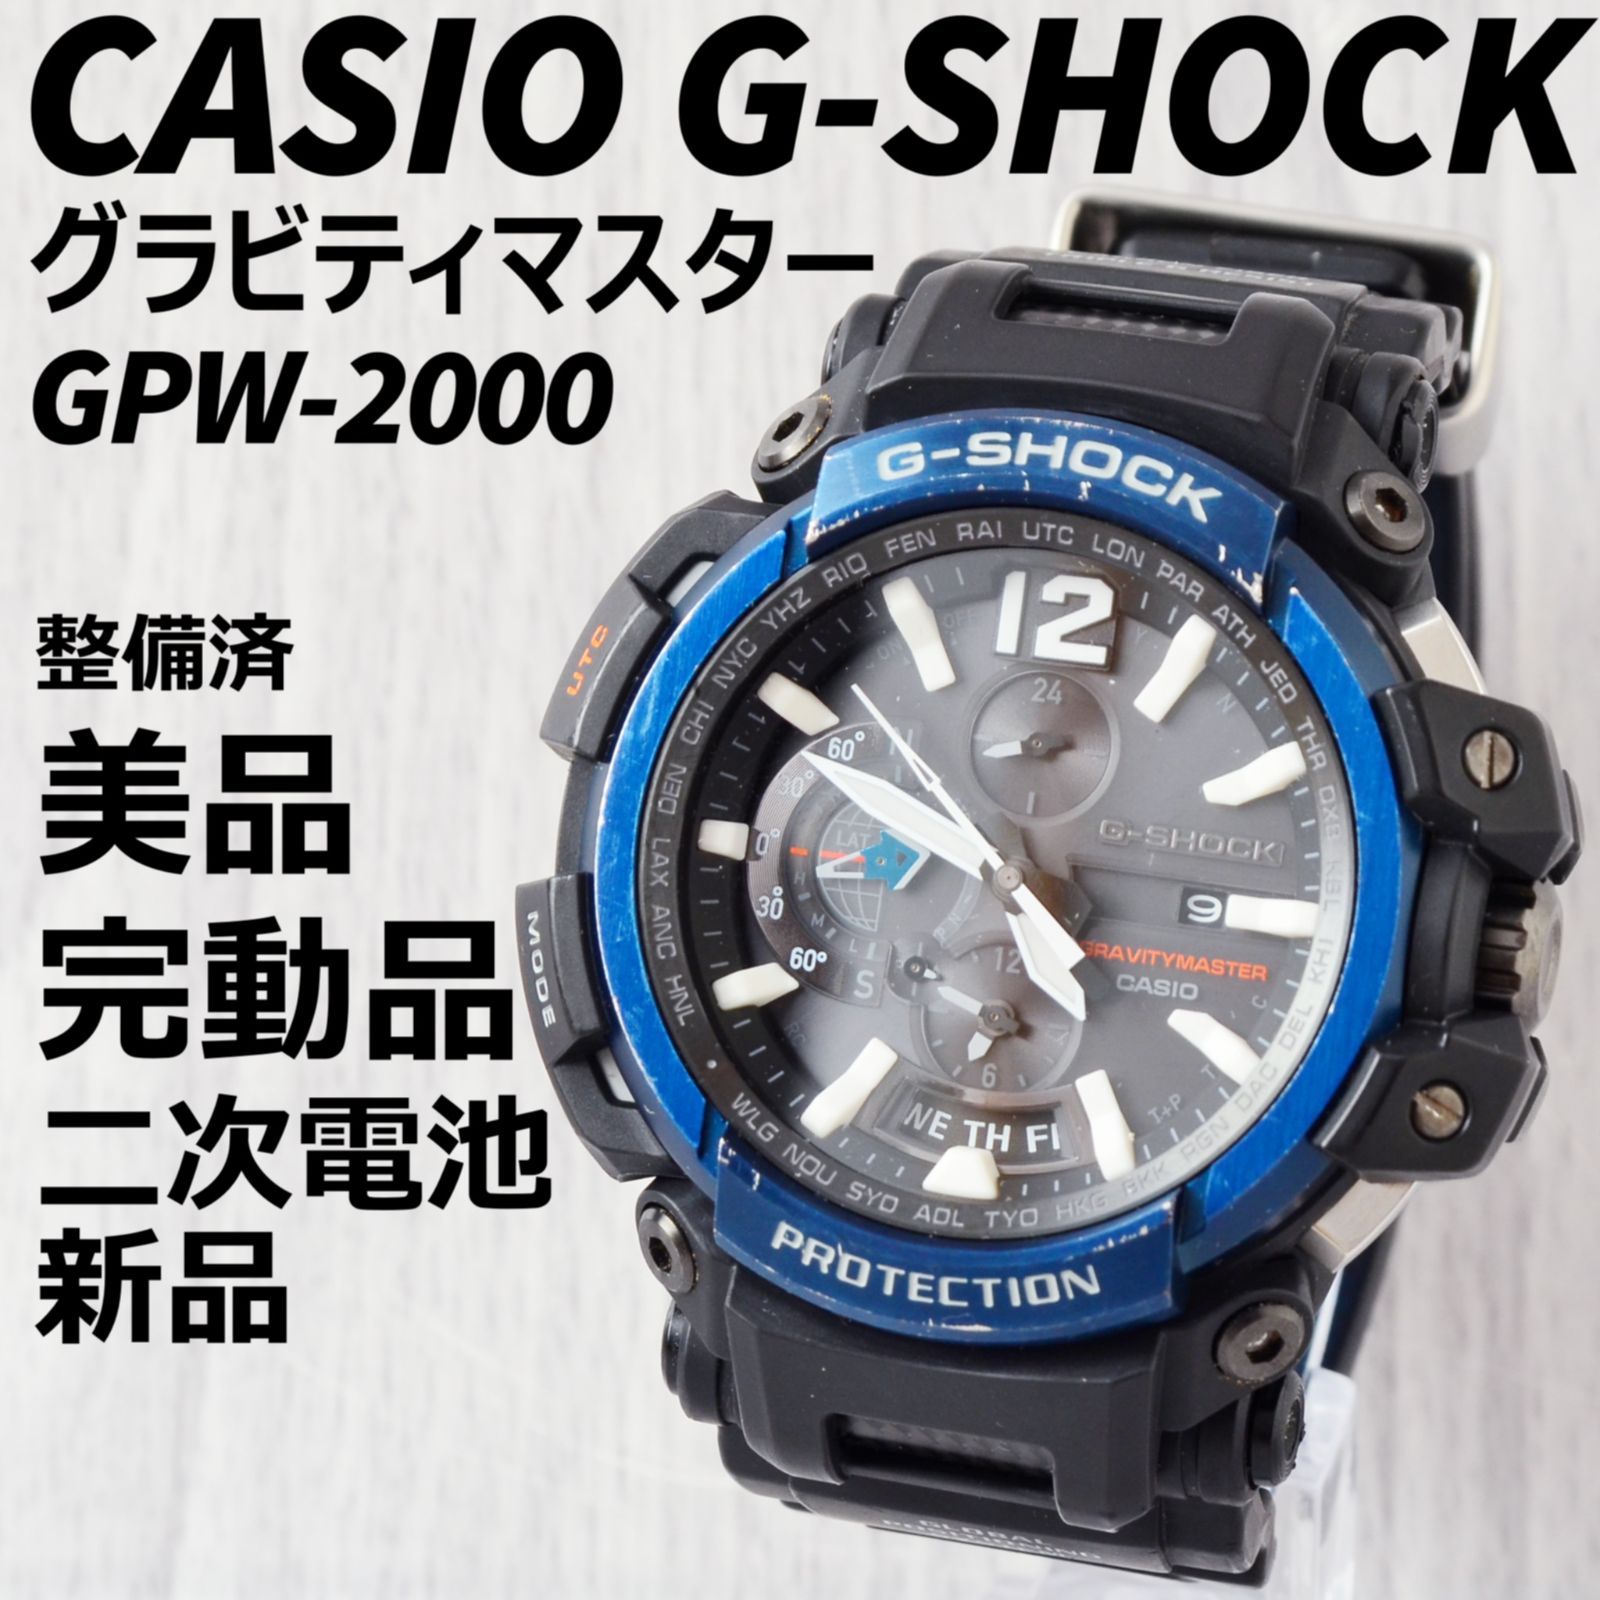 G-SHOCK GPW-2000-3AJF グラビティマスター マスターオブG-